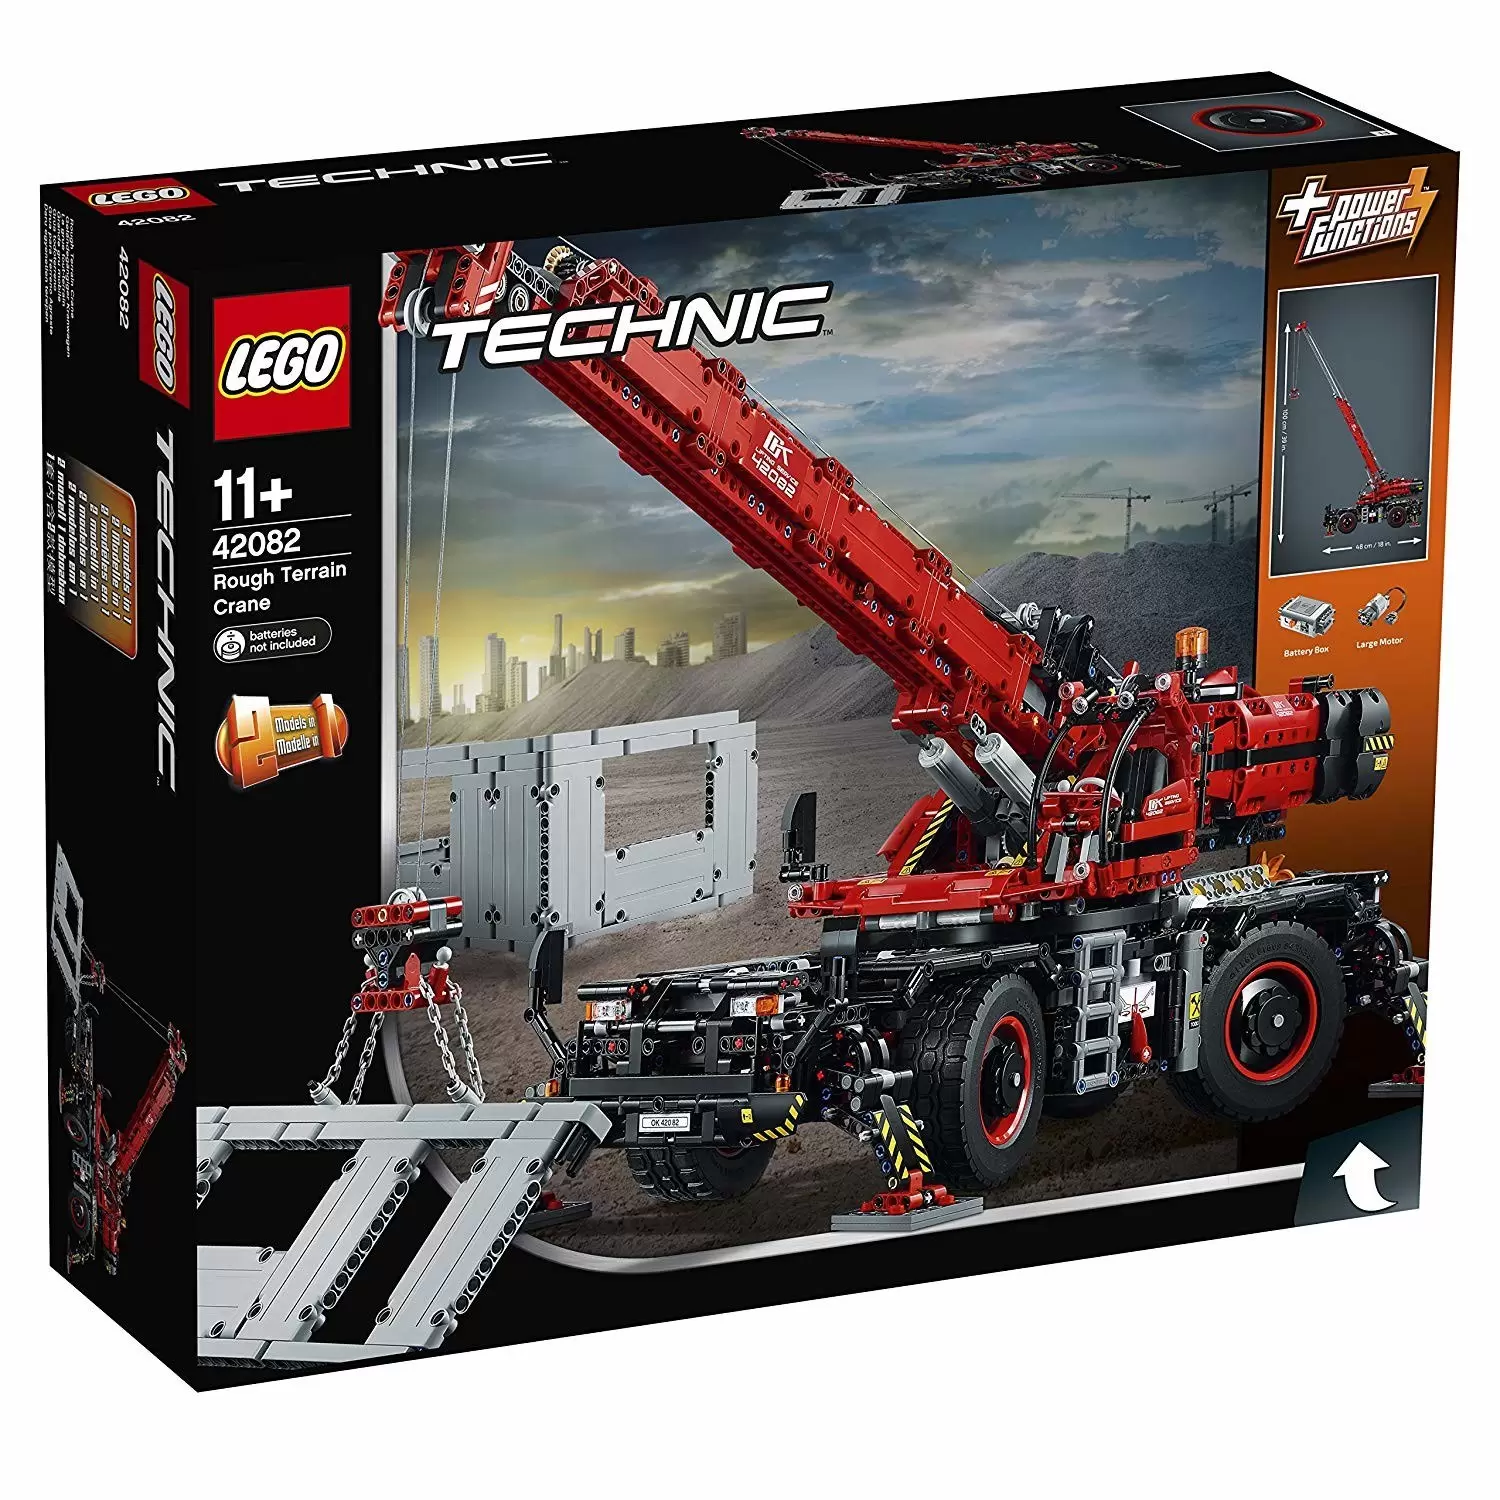 LEGO Technic - Rough Terrain Crane